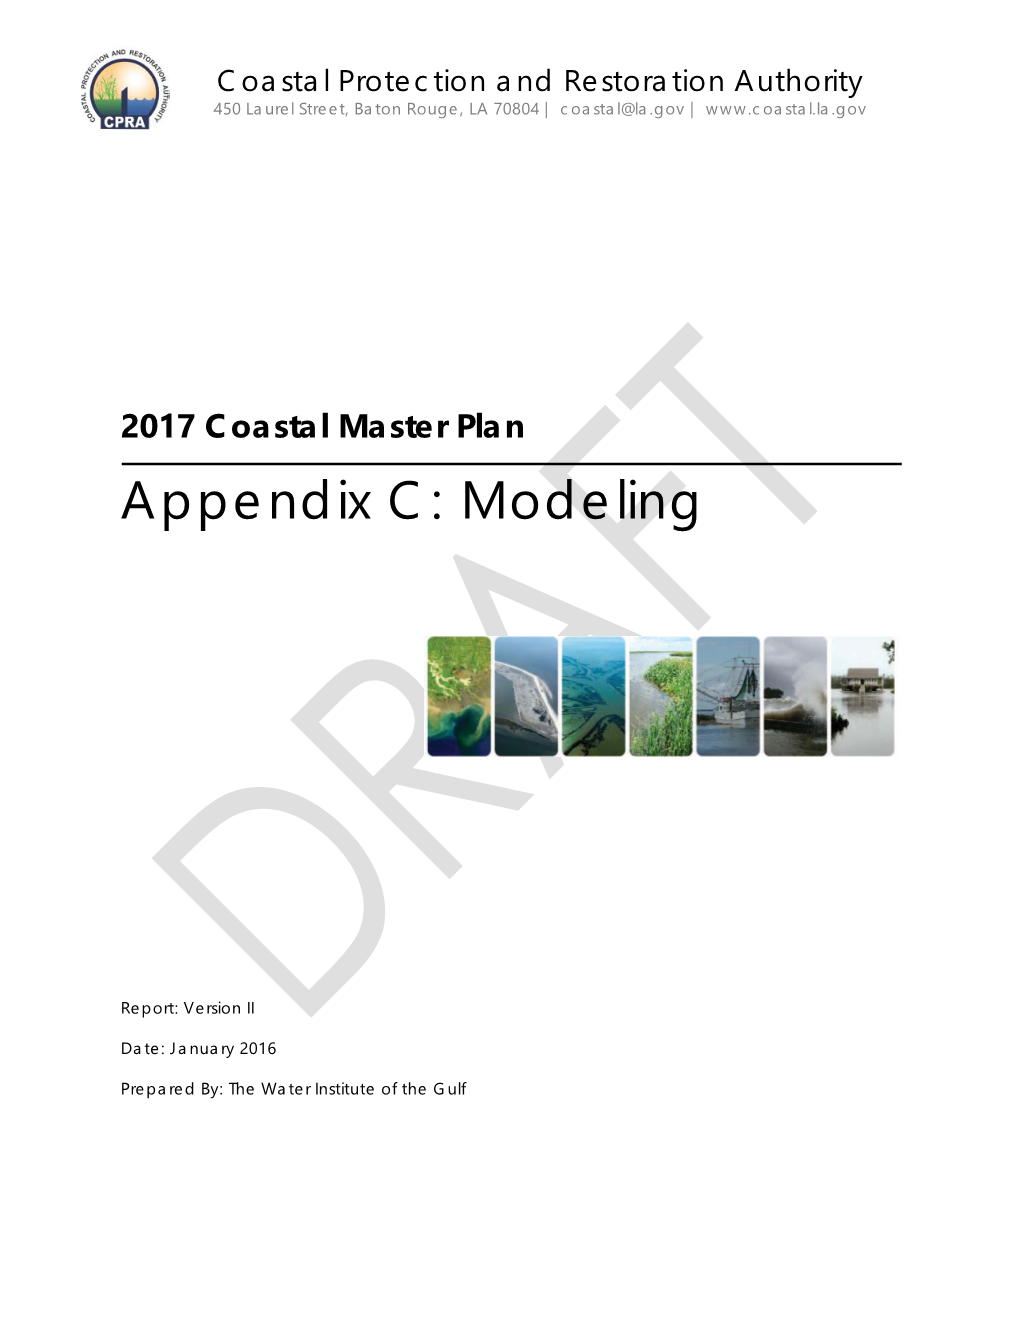 Appendix C: Modeling